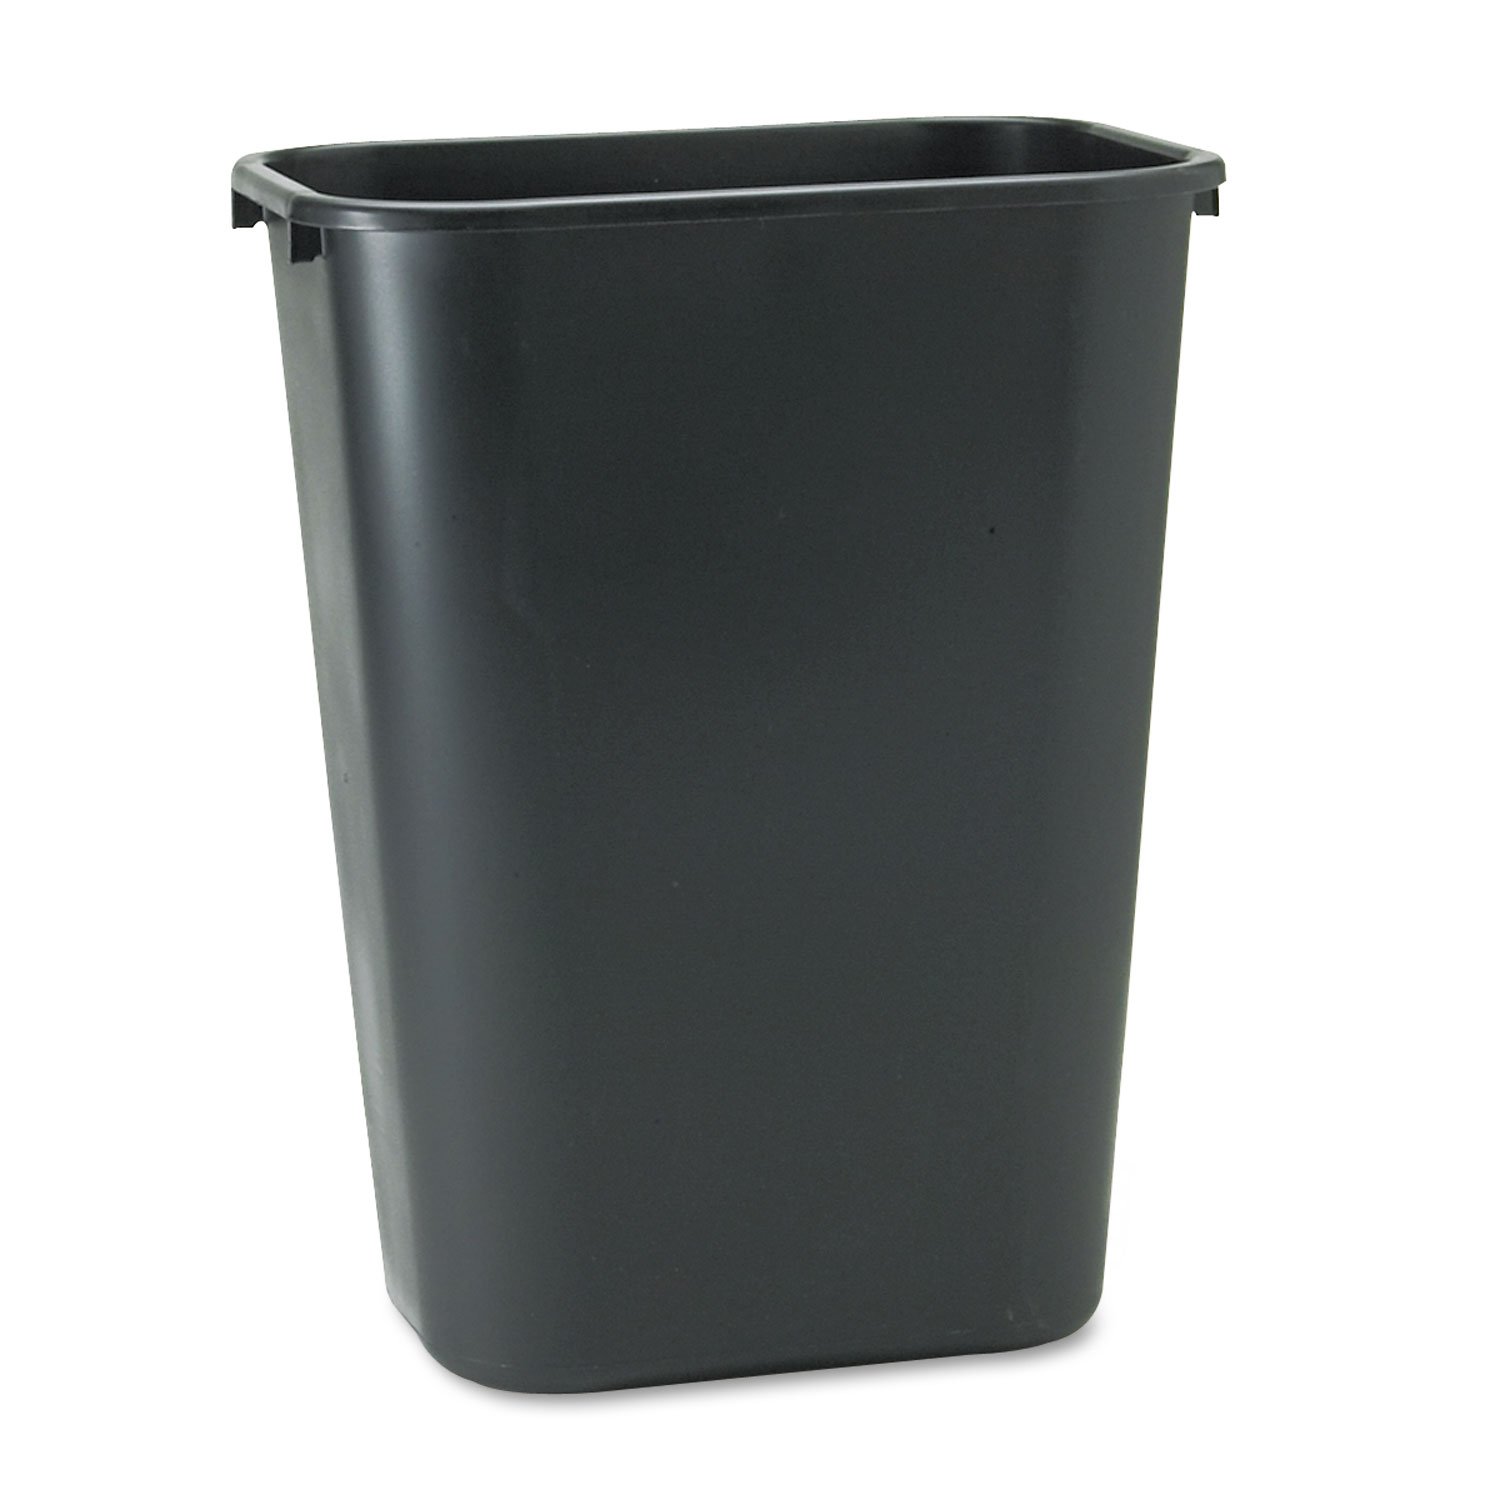 Rubbermaid Black Deskside Plastic Wastebasket